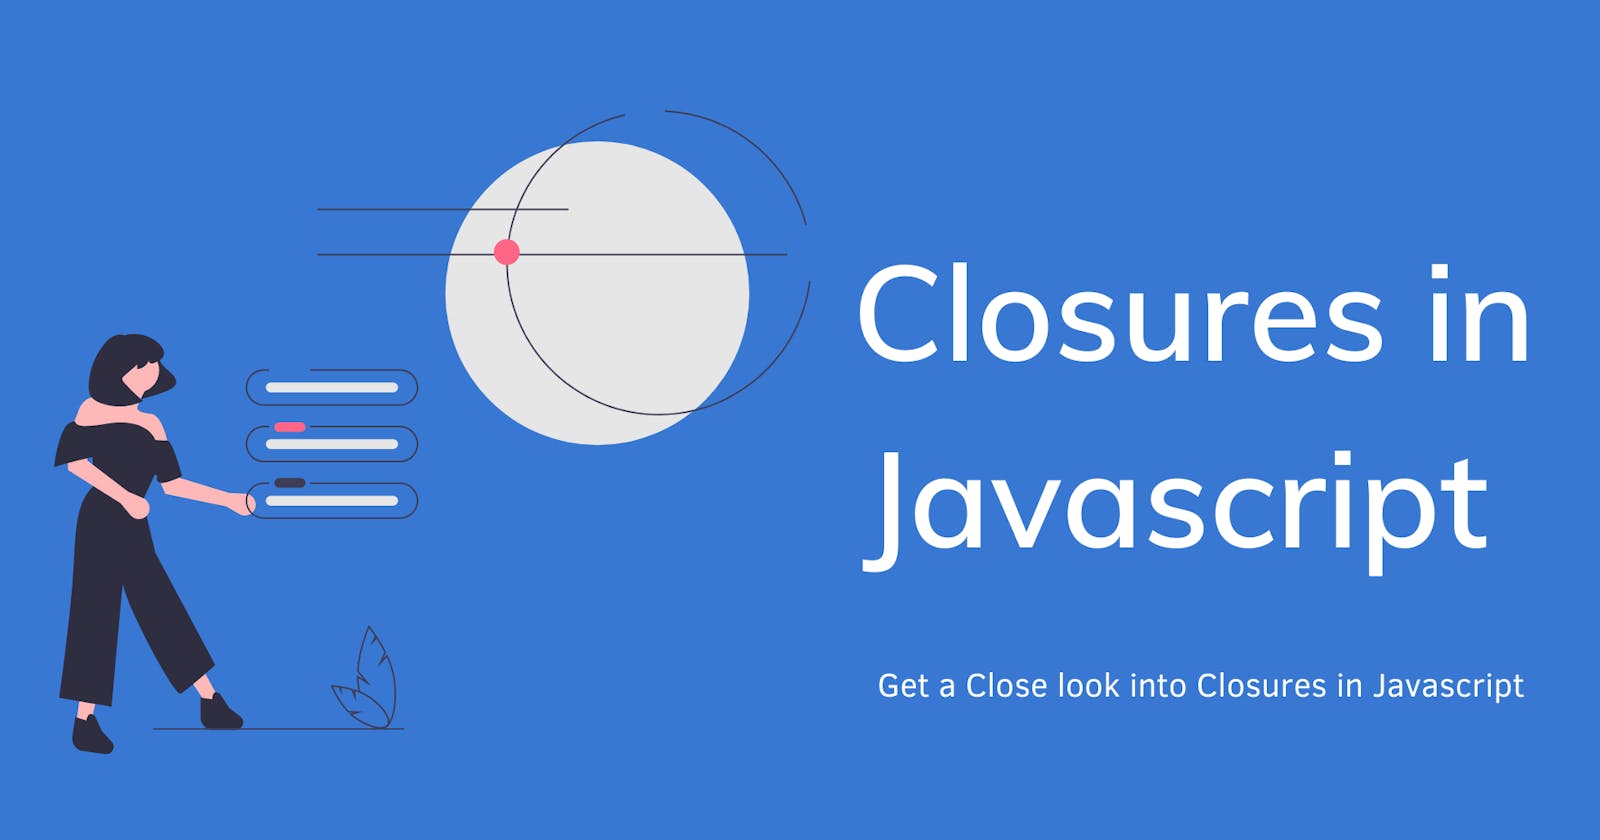 Closures in Javascript